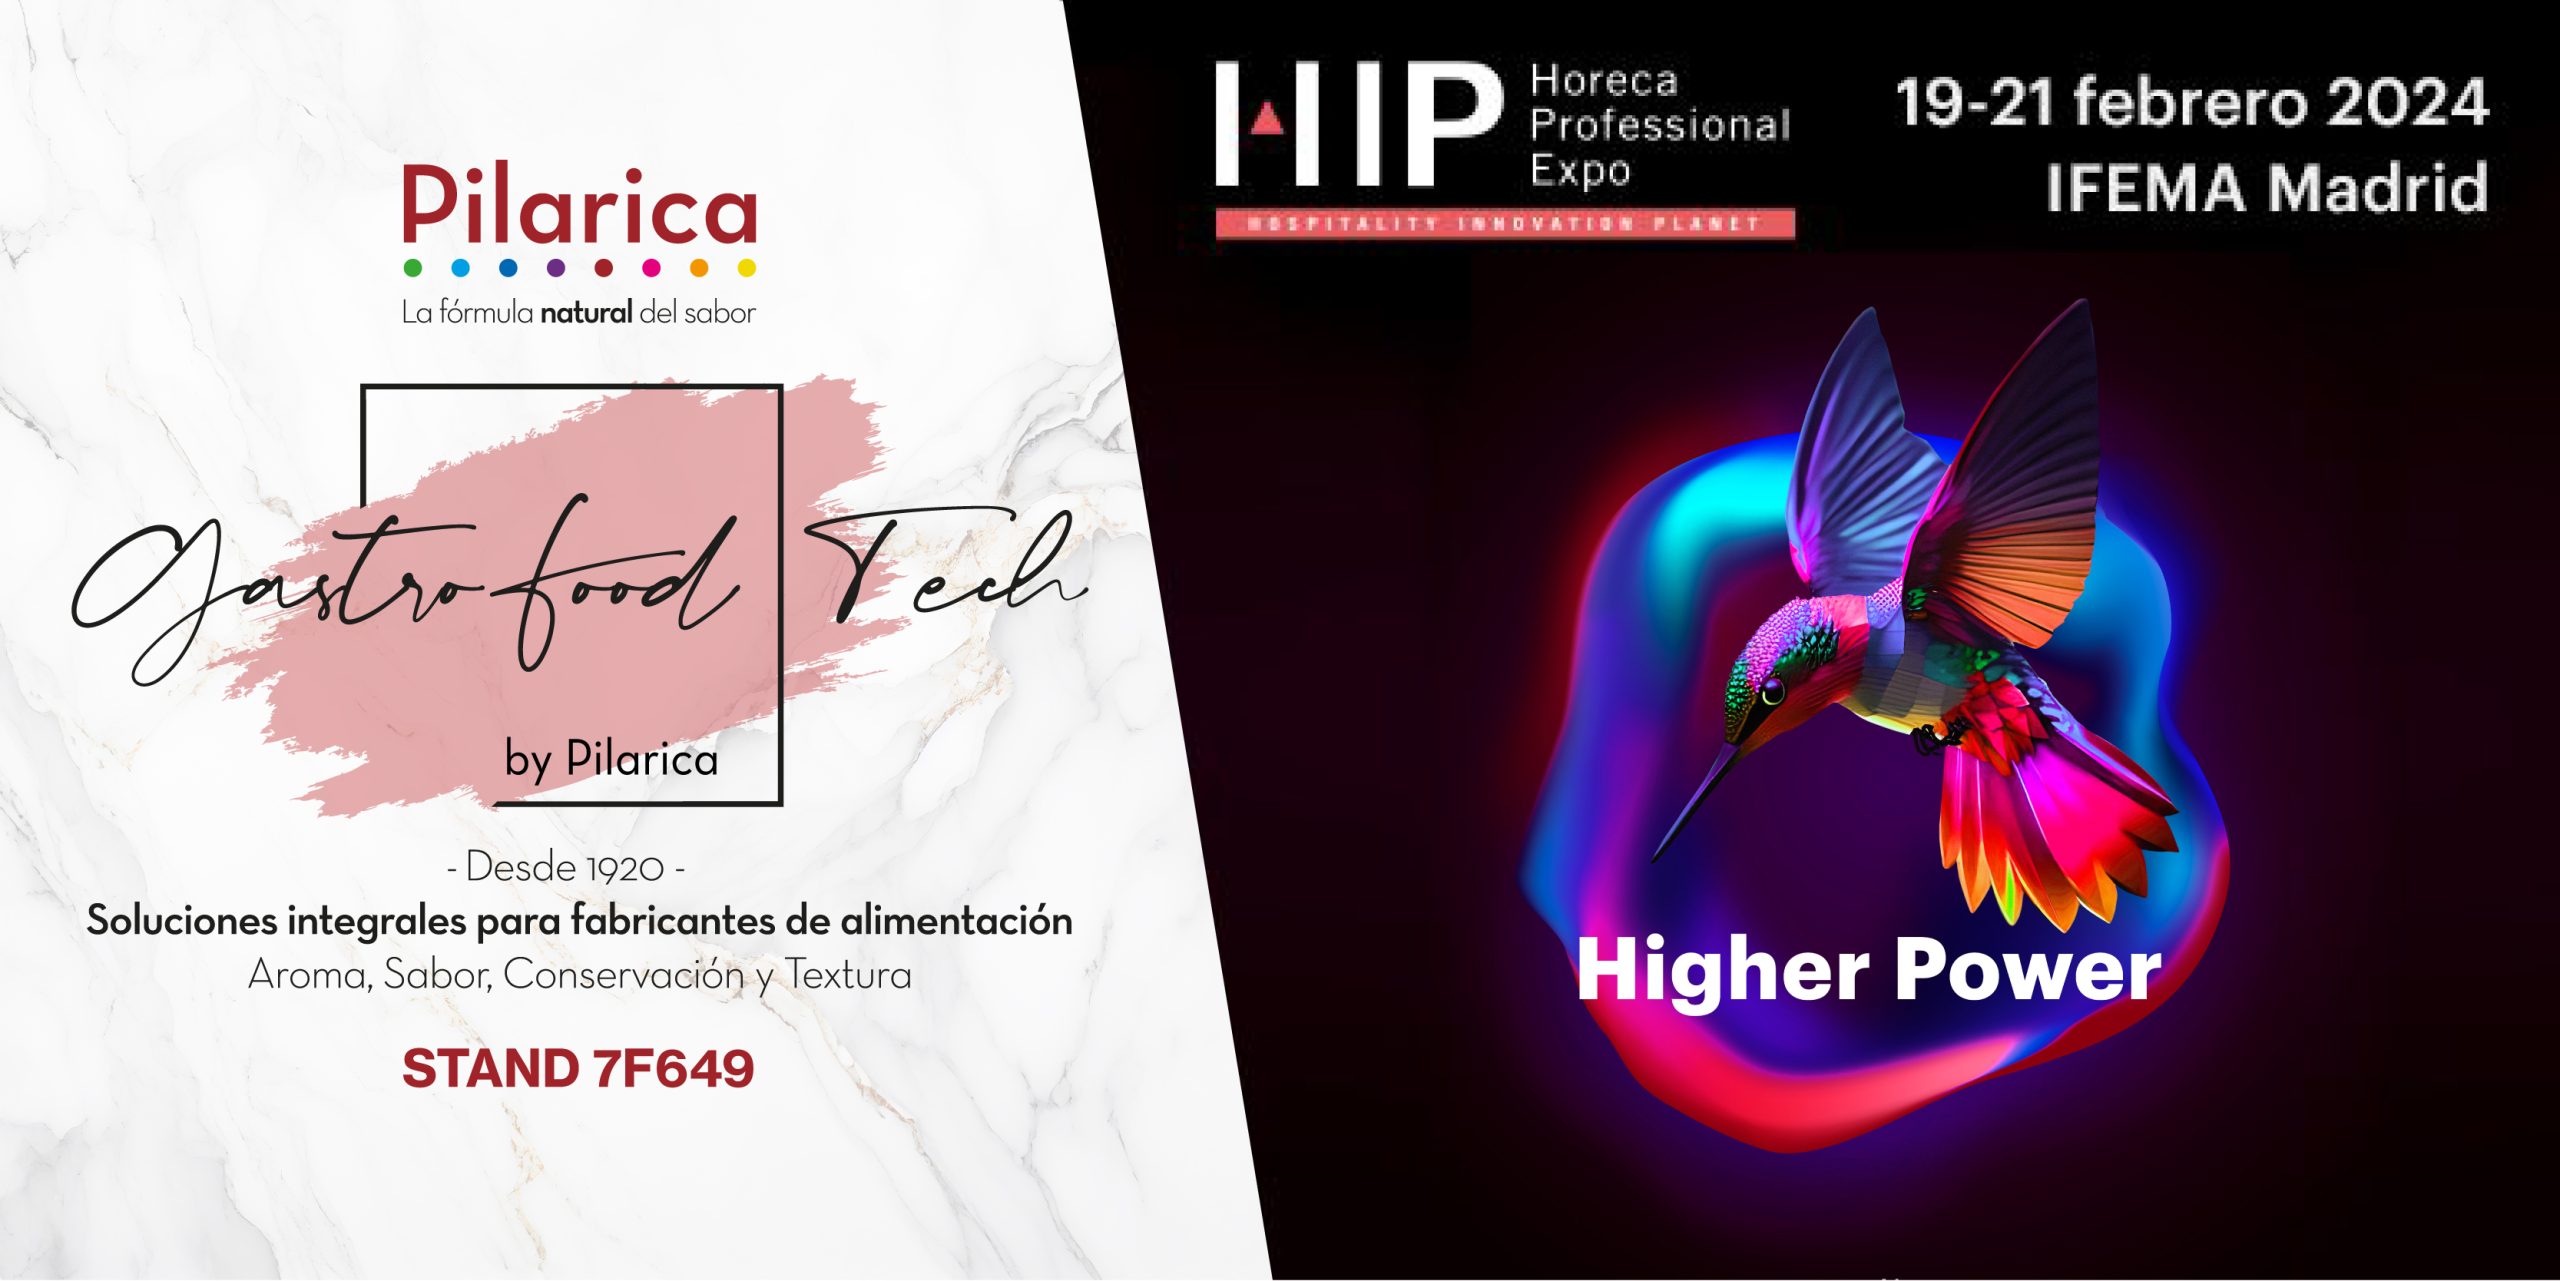 Visítanos en HIP–Horeca Professional Expo